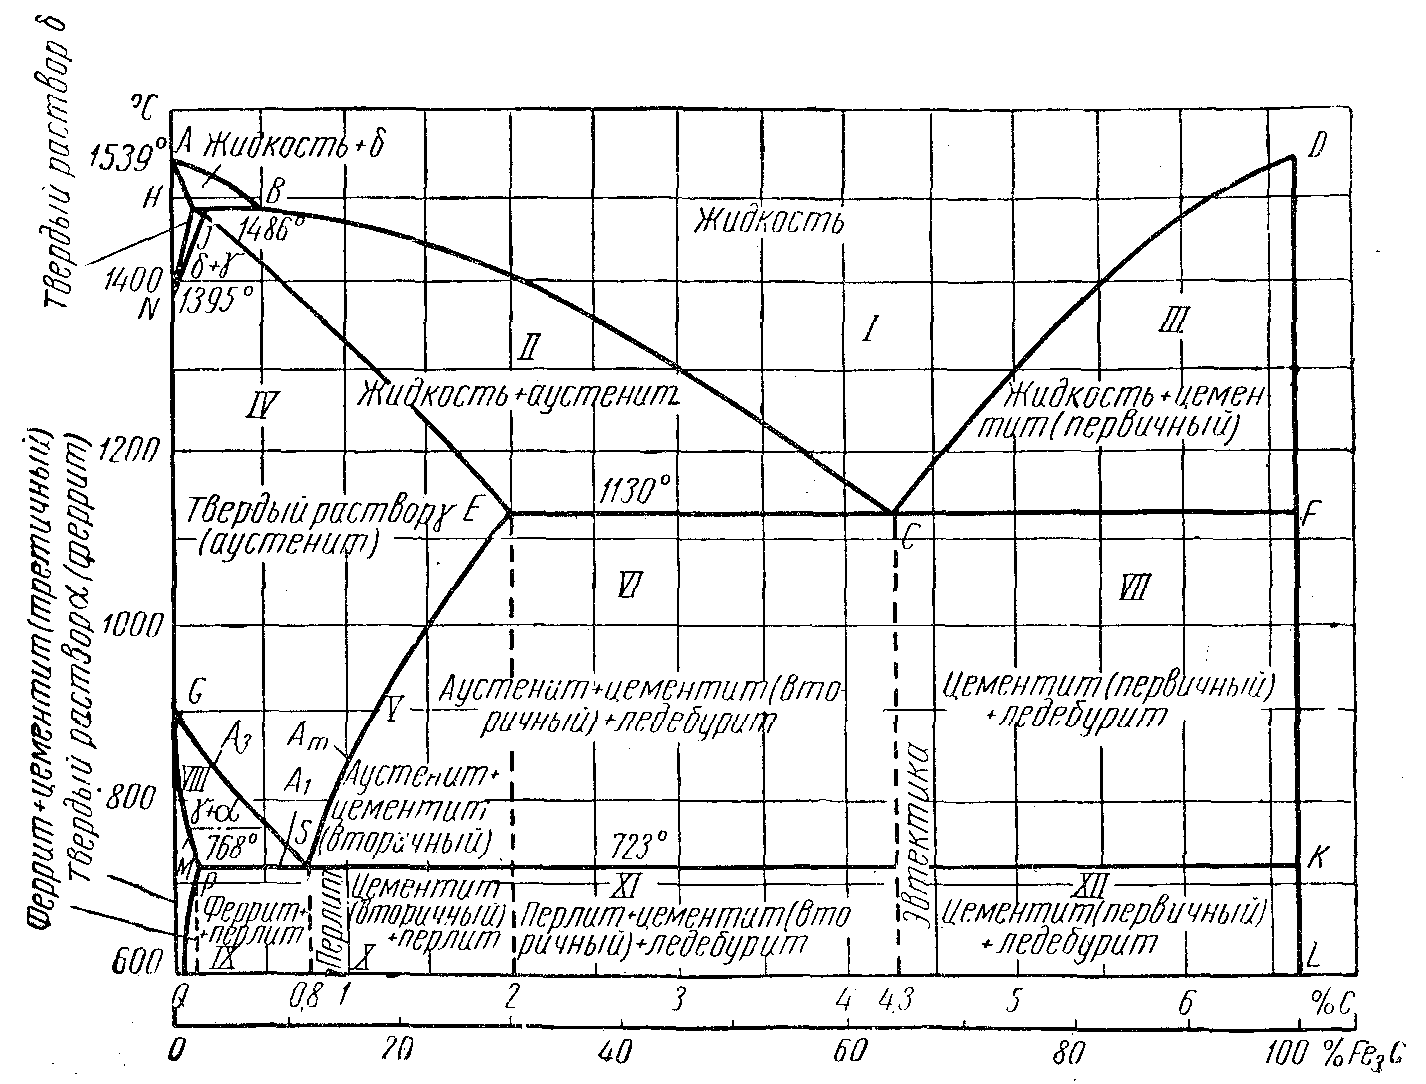 Диаграмма железо углерод с пояснениями